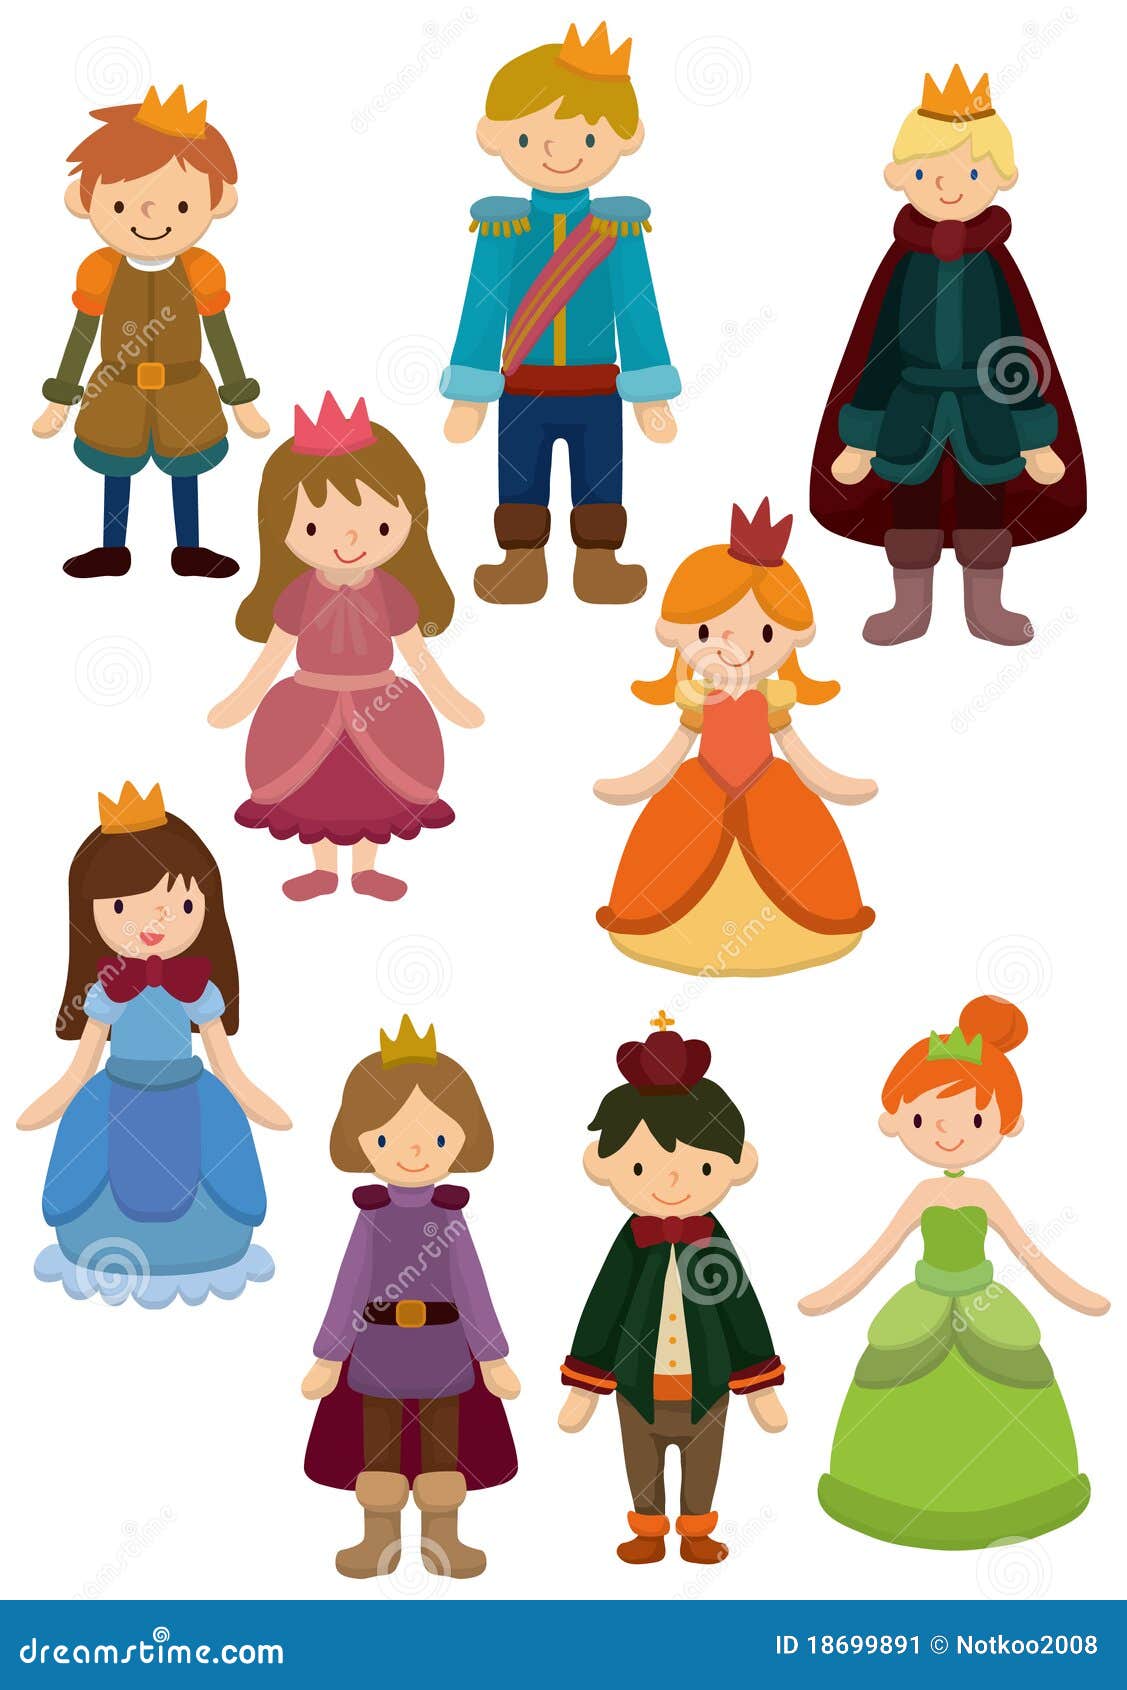 Stock Image: Cartoon Prince and Princess icon